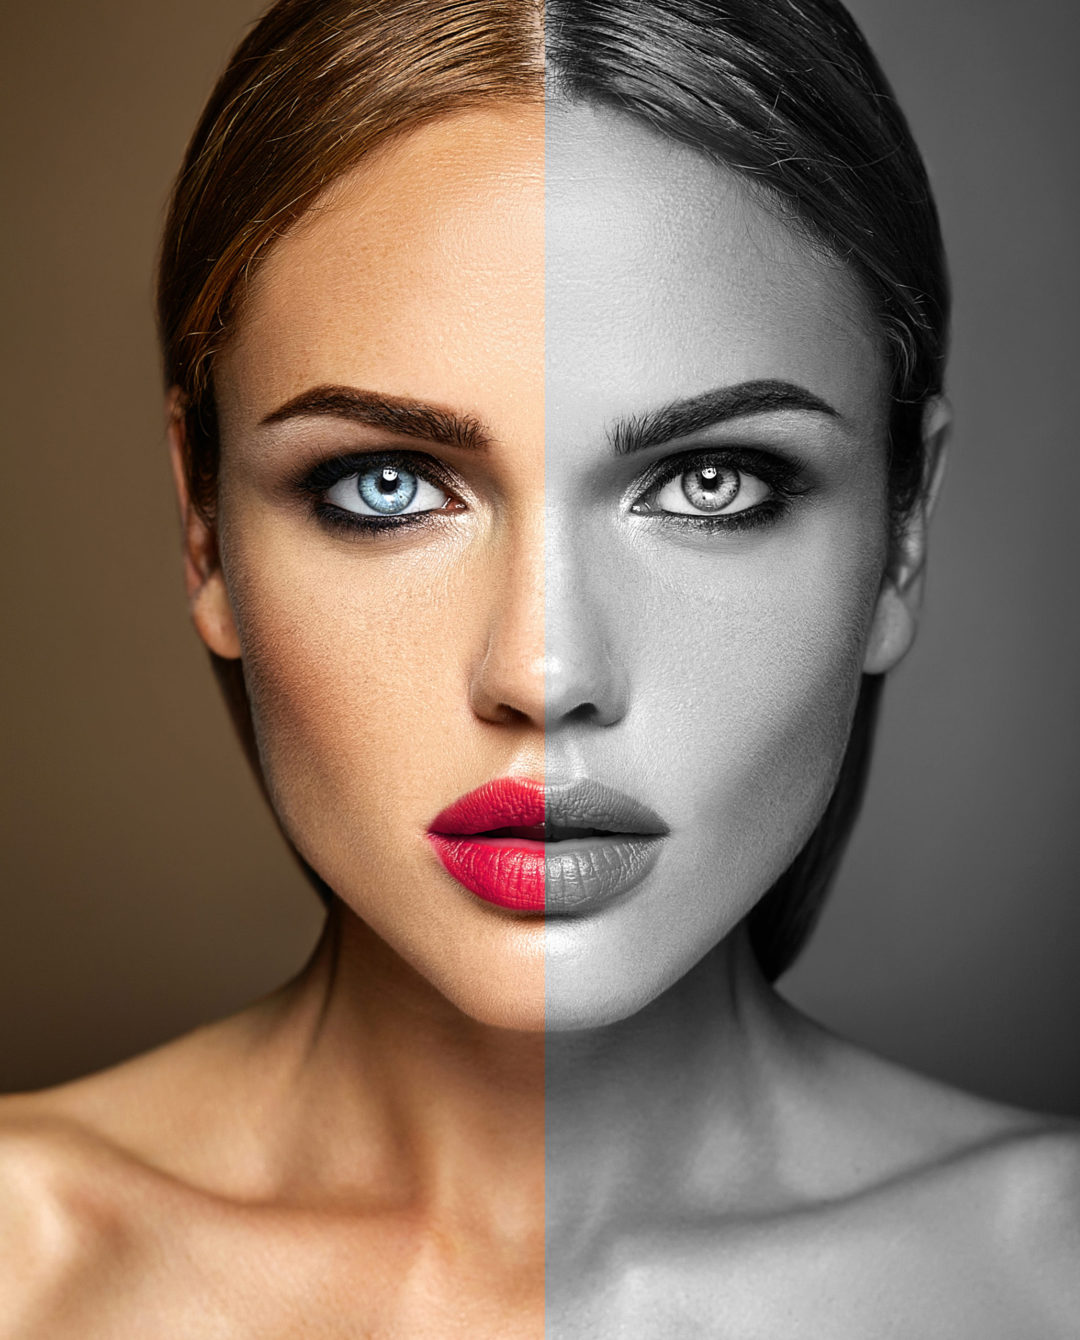 blog photo depicting comparison between hd vs non hd makeup.